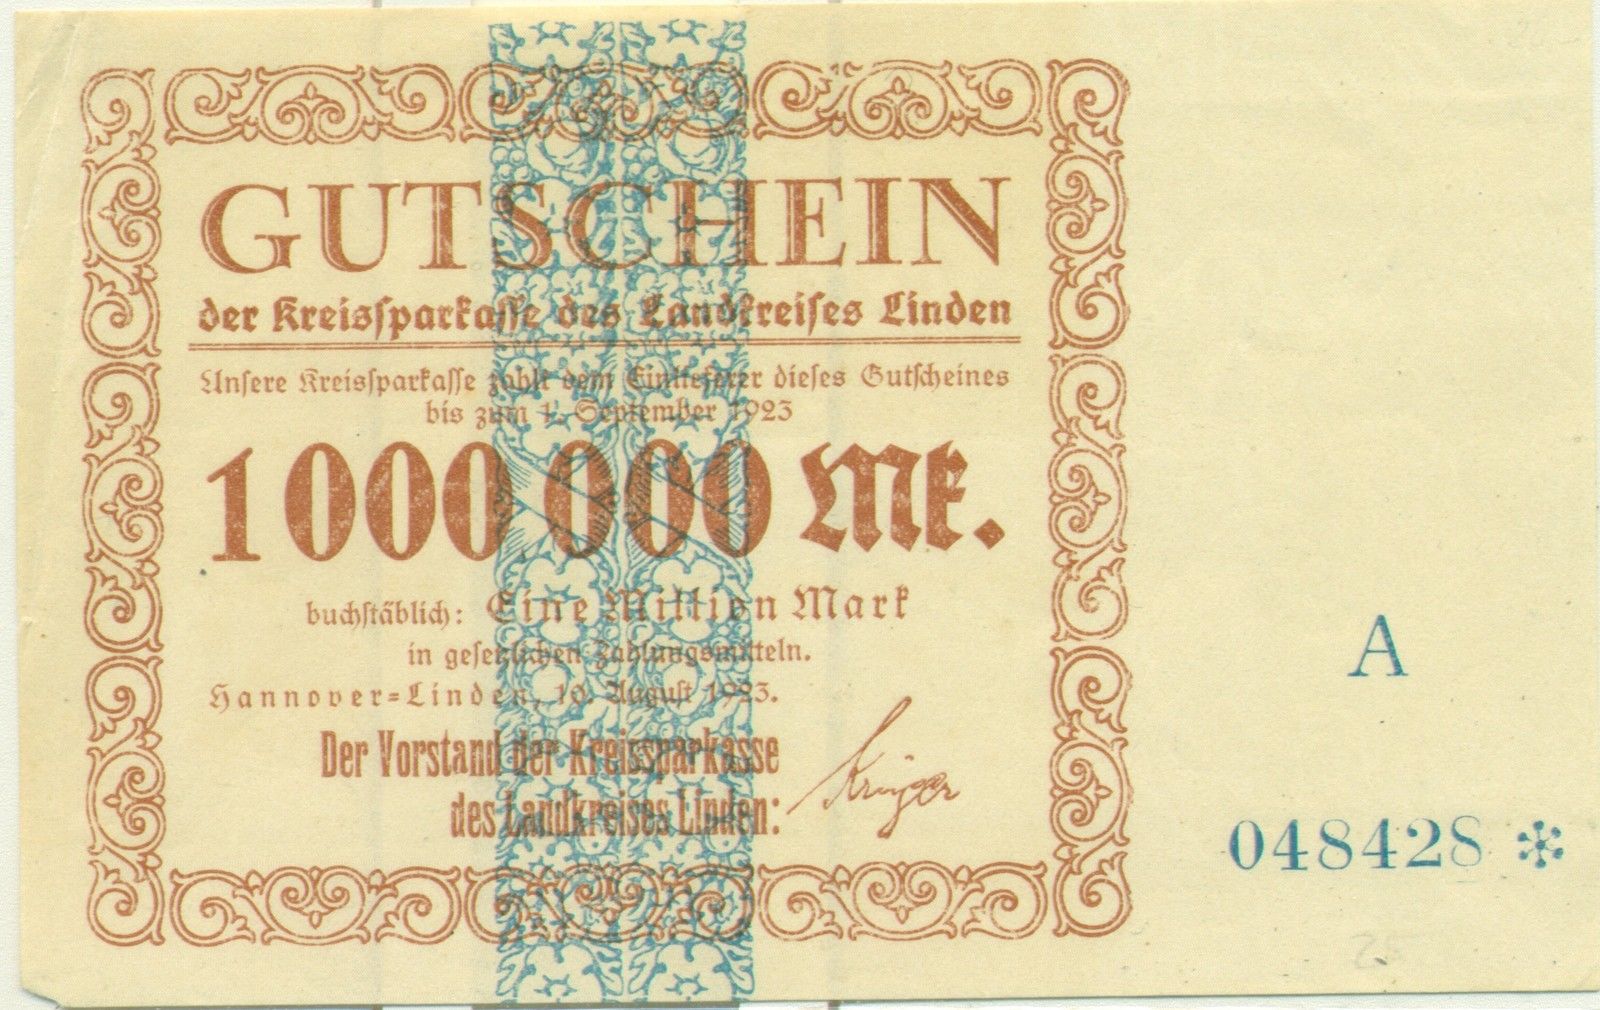 GERMANY 500000 MARK FREIBURG BANKNOTE NOTGELD GUTSCHEIN 1923 FINE 